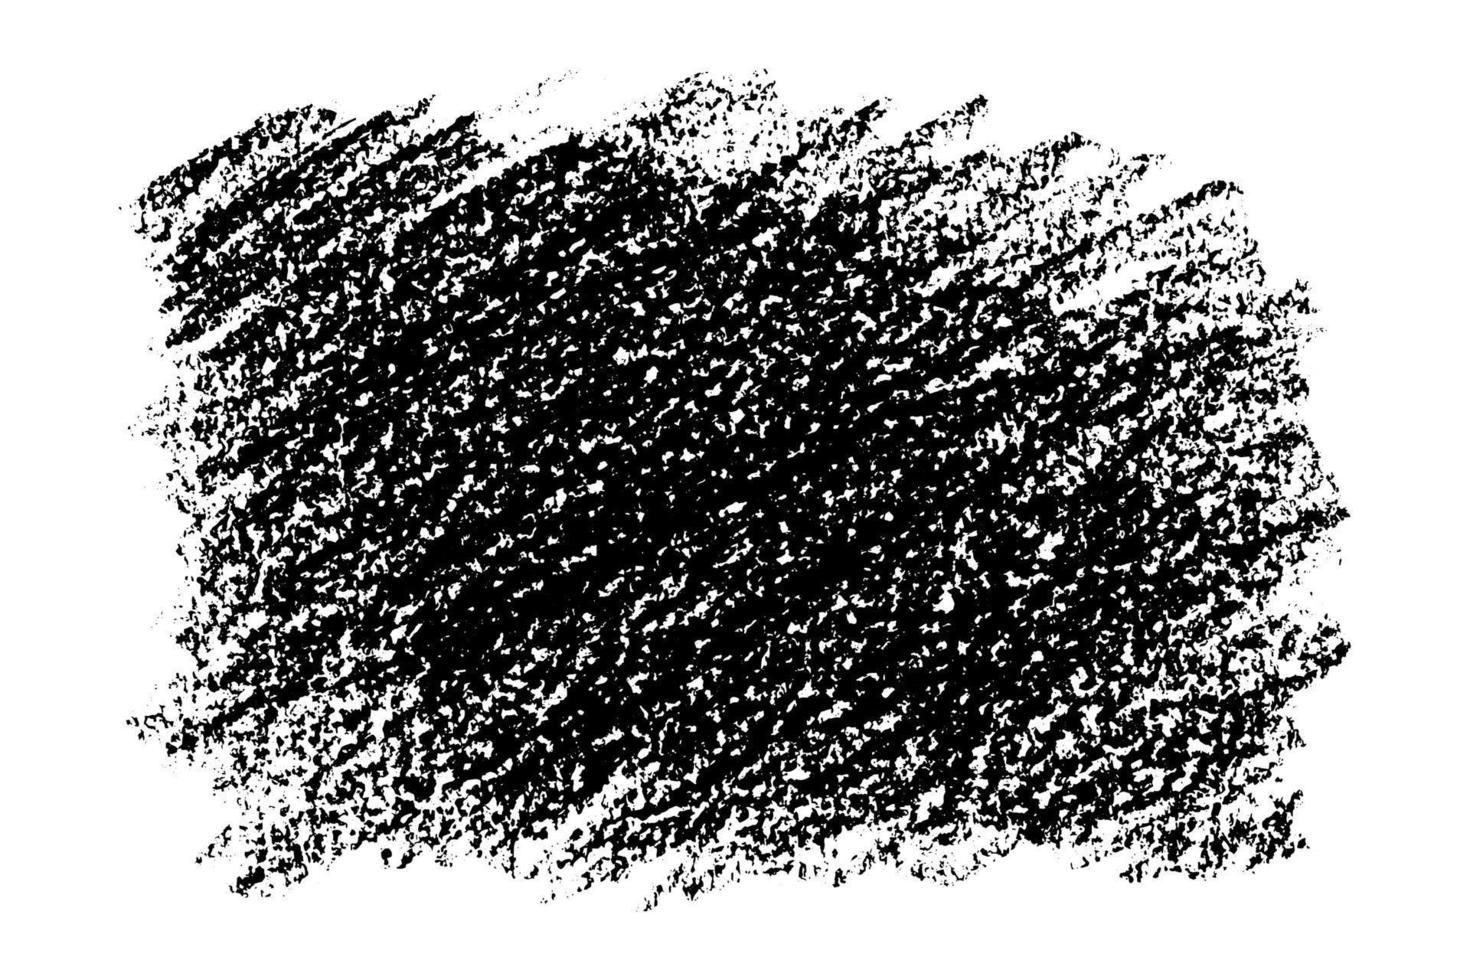 fond grunge de texture noire dessiné avec du charbon de bois. inverse des gribouillis de craie isolés sur fond blanc. illustration vectorielle. vecteur